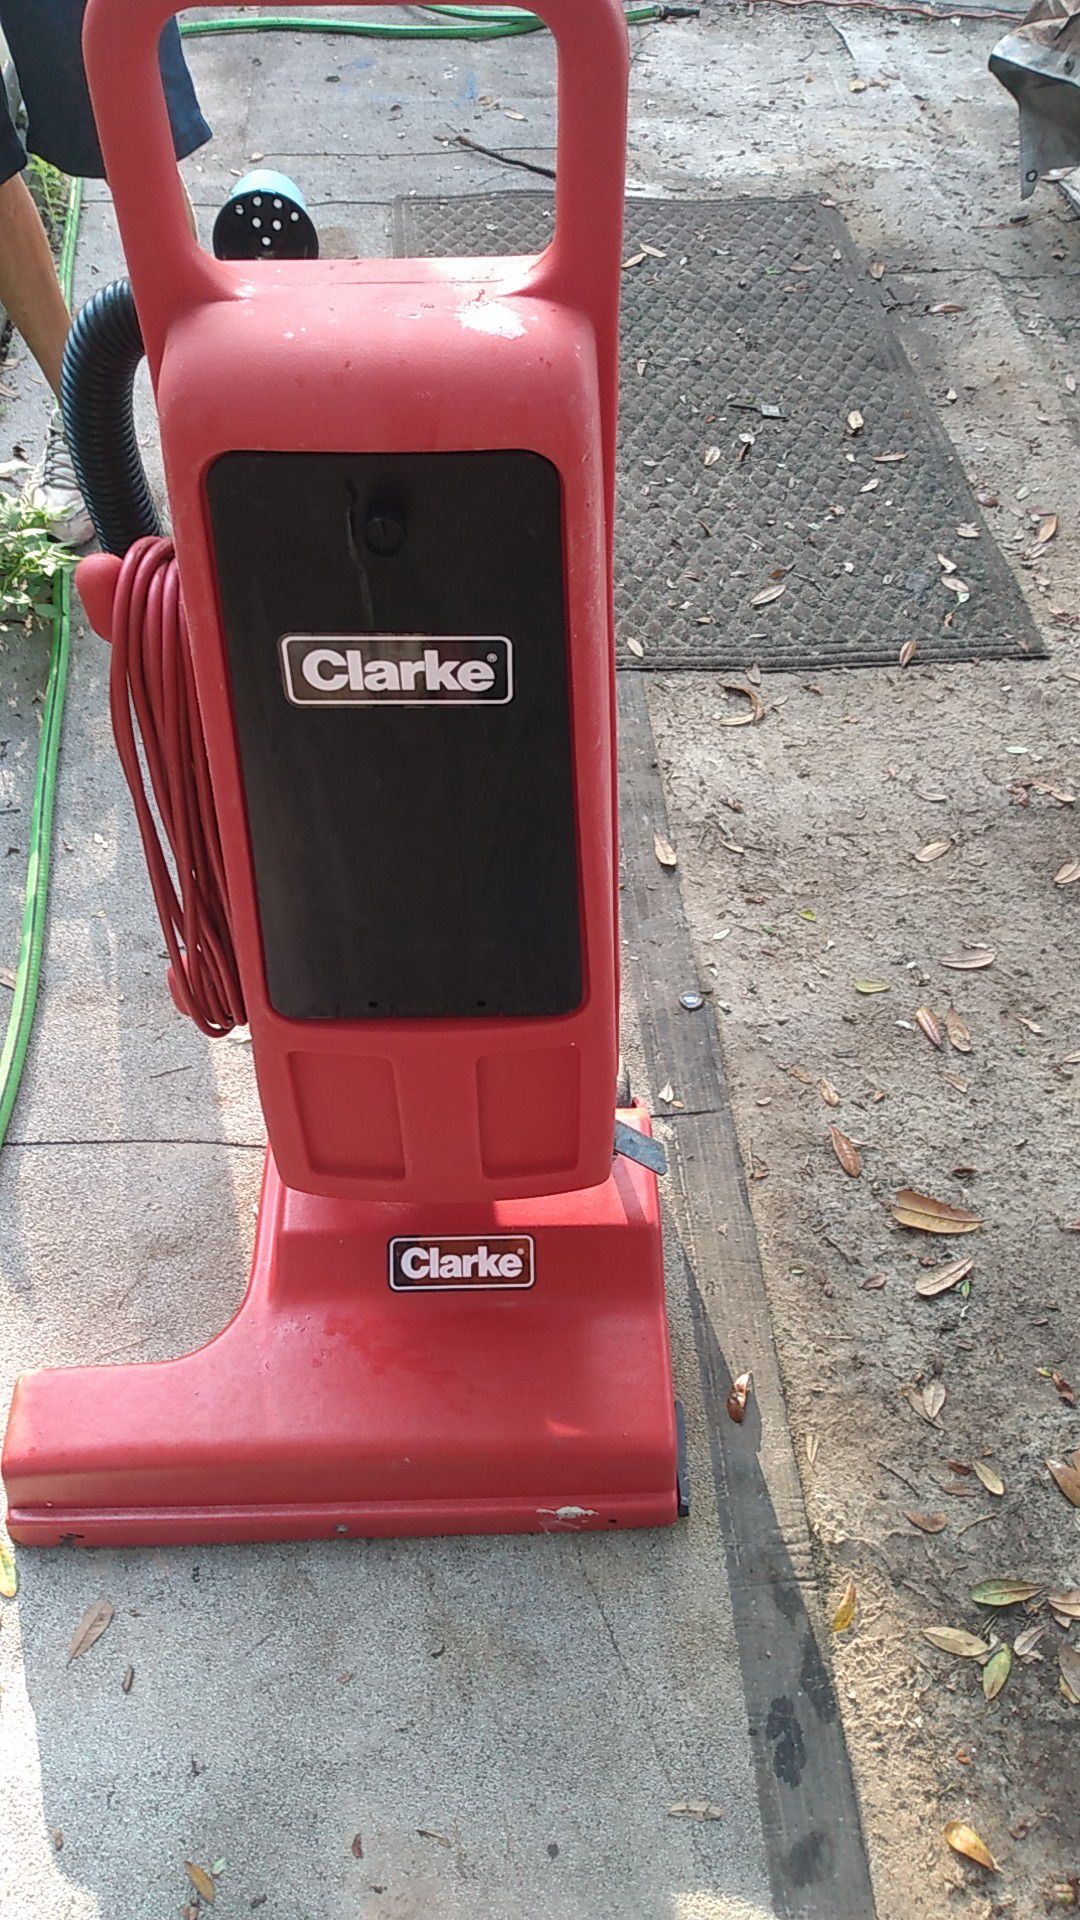 Clark commercial vacuum cleaner